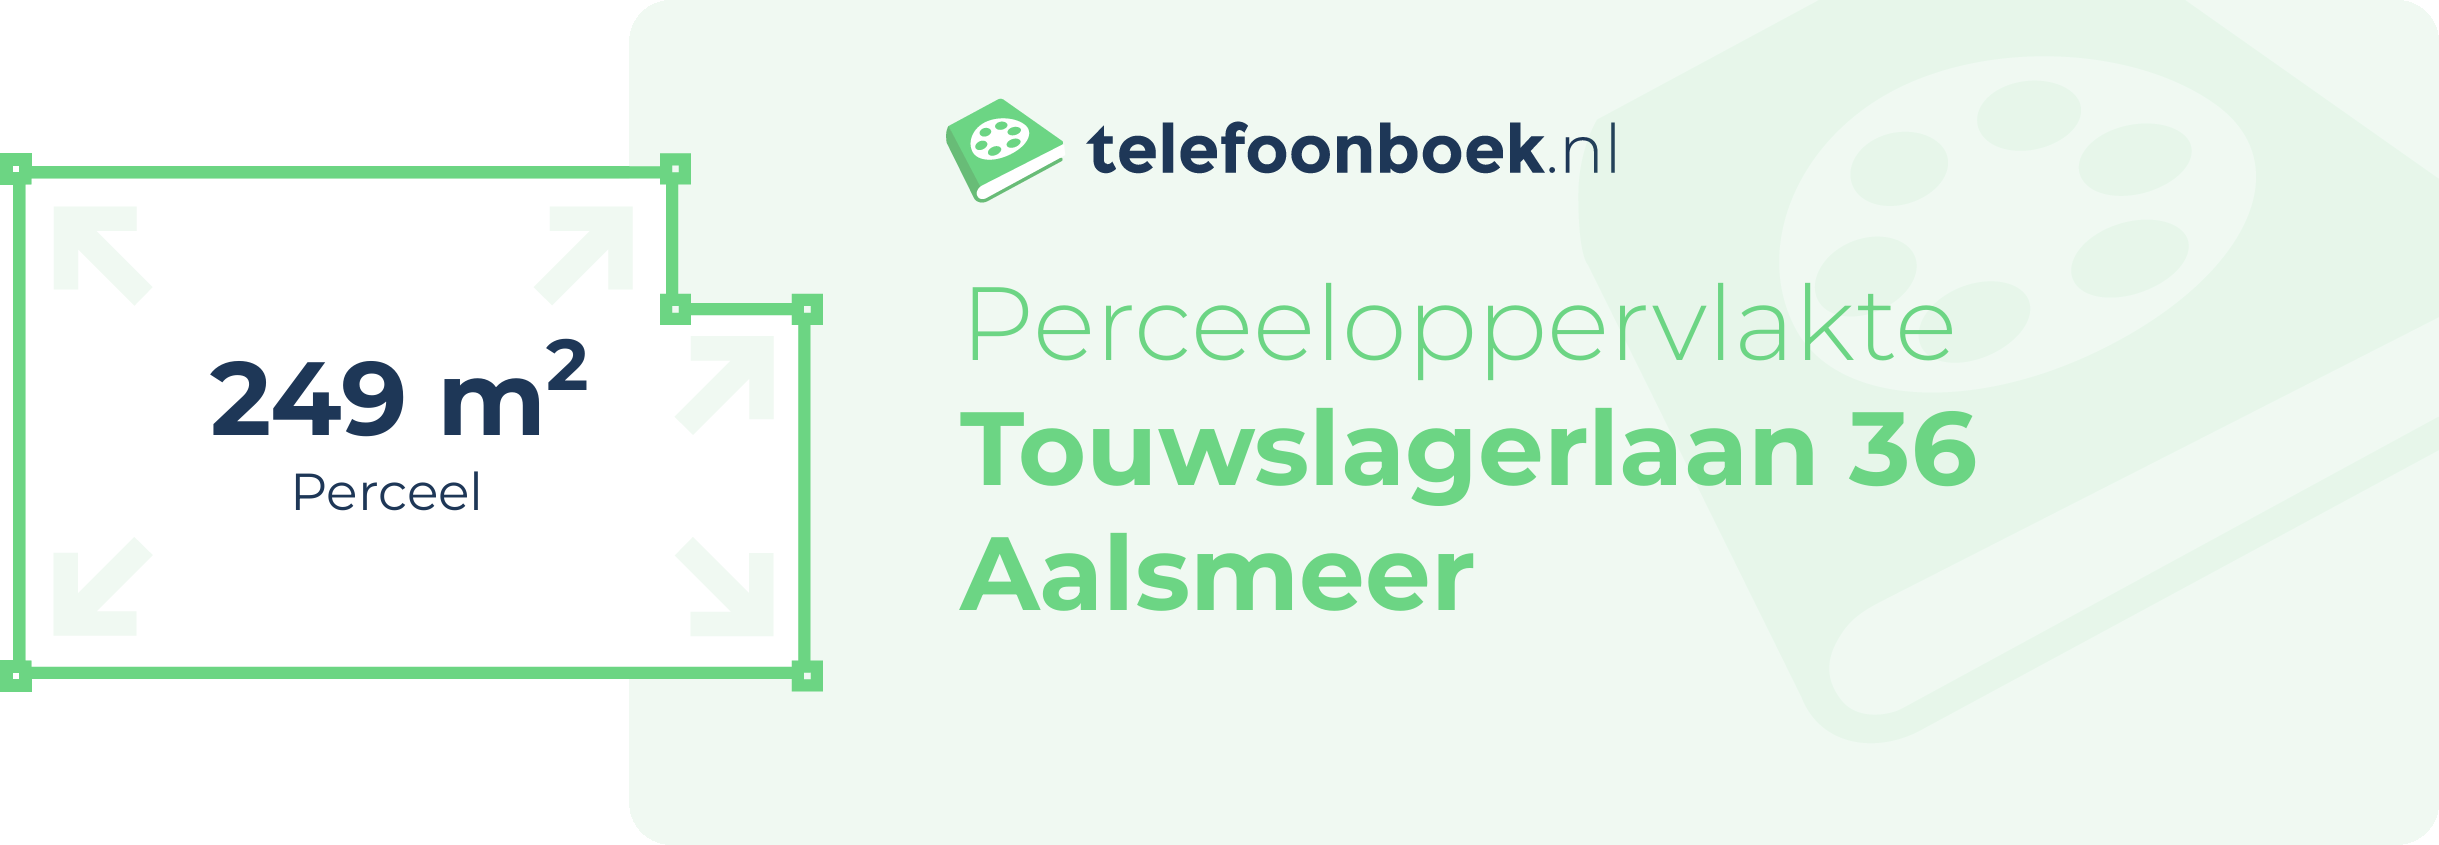 Perceeloppervlakte Touwslagerlaan 36 Aalsmeer